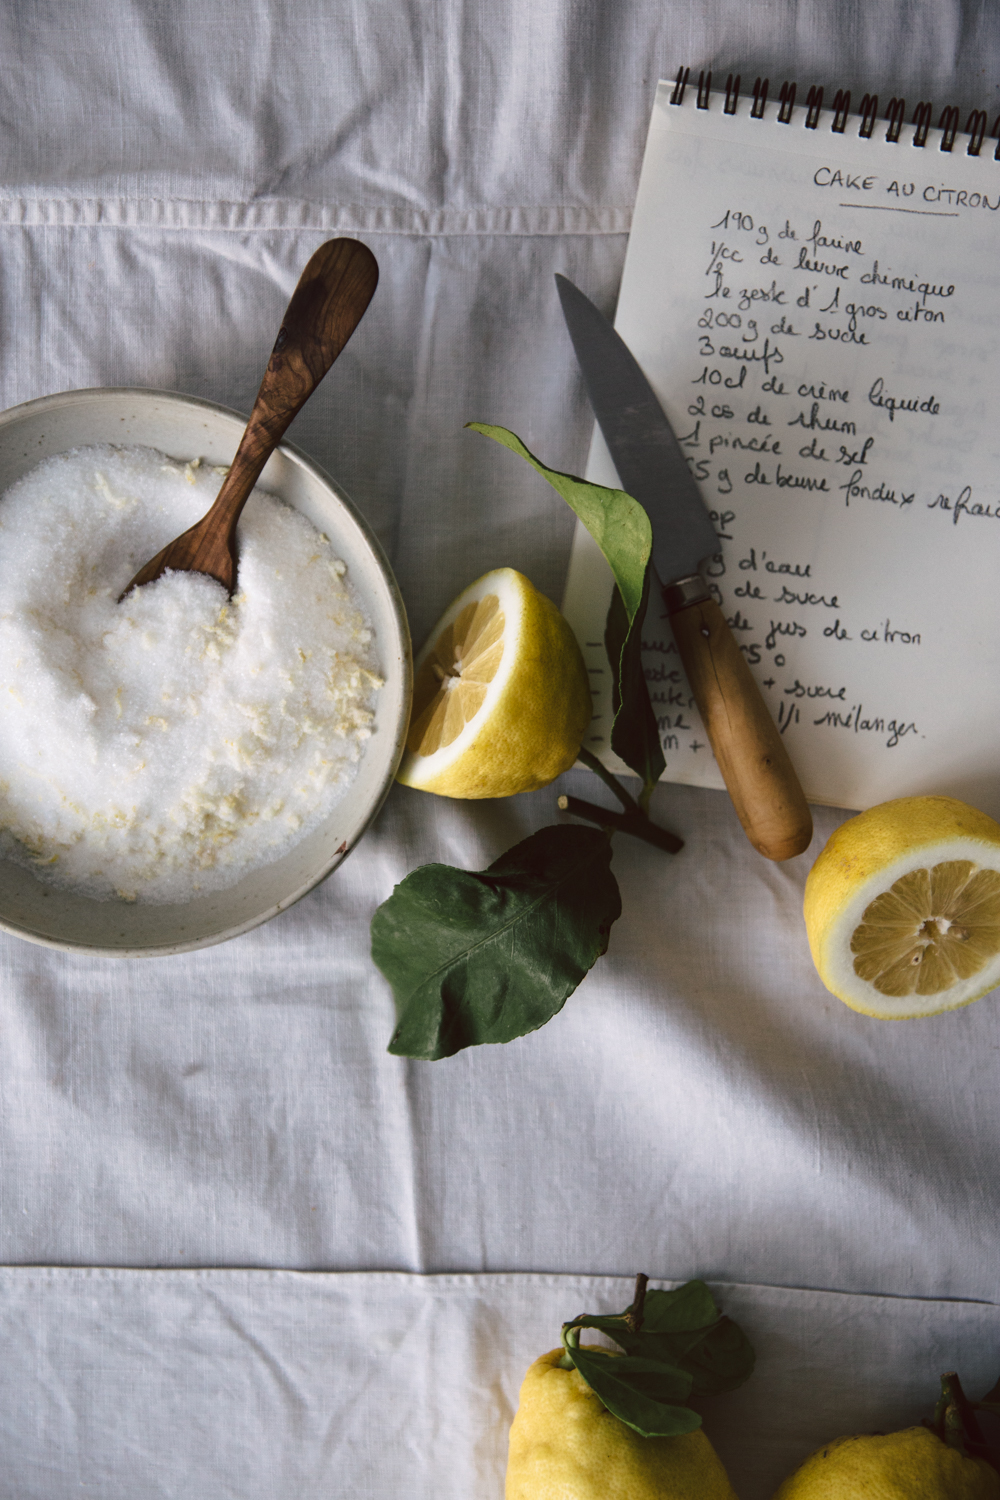 Cake au citron moelleux et acidulé - Ophelie's Kitchen Book-10